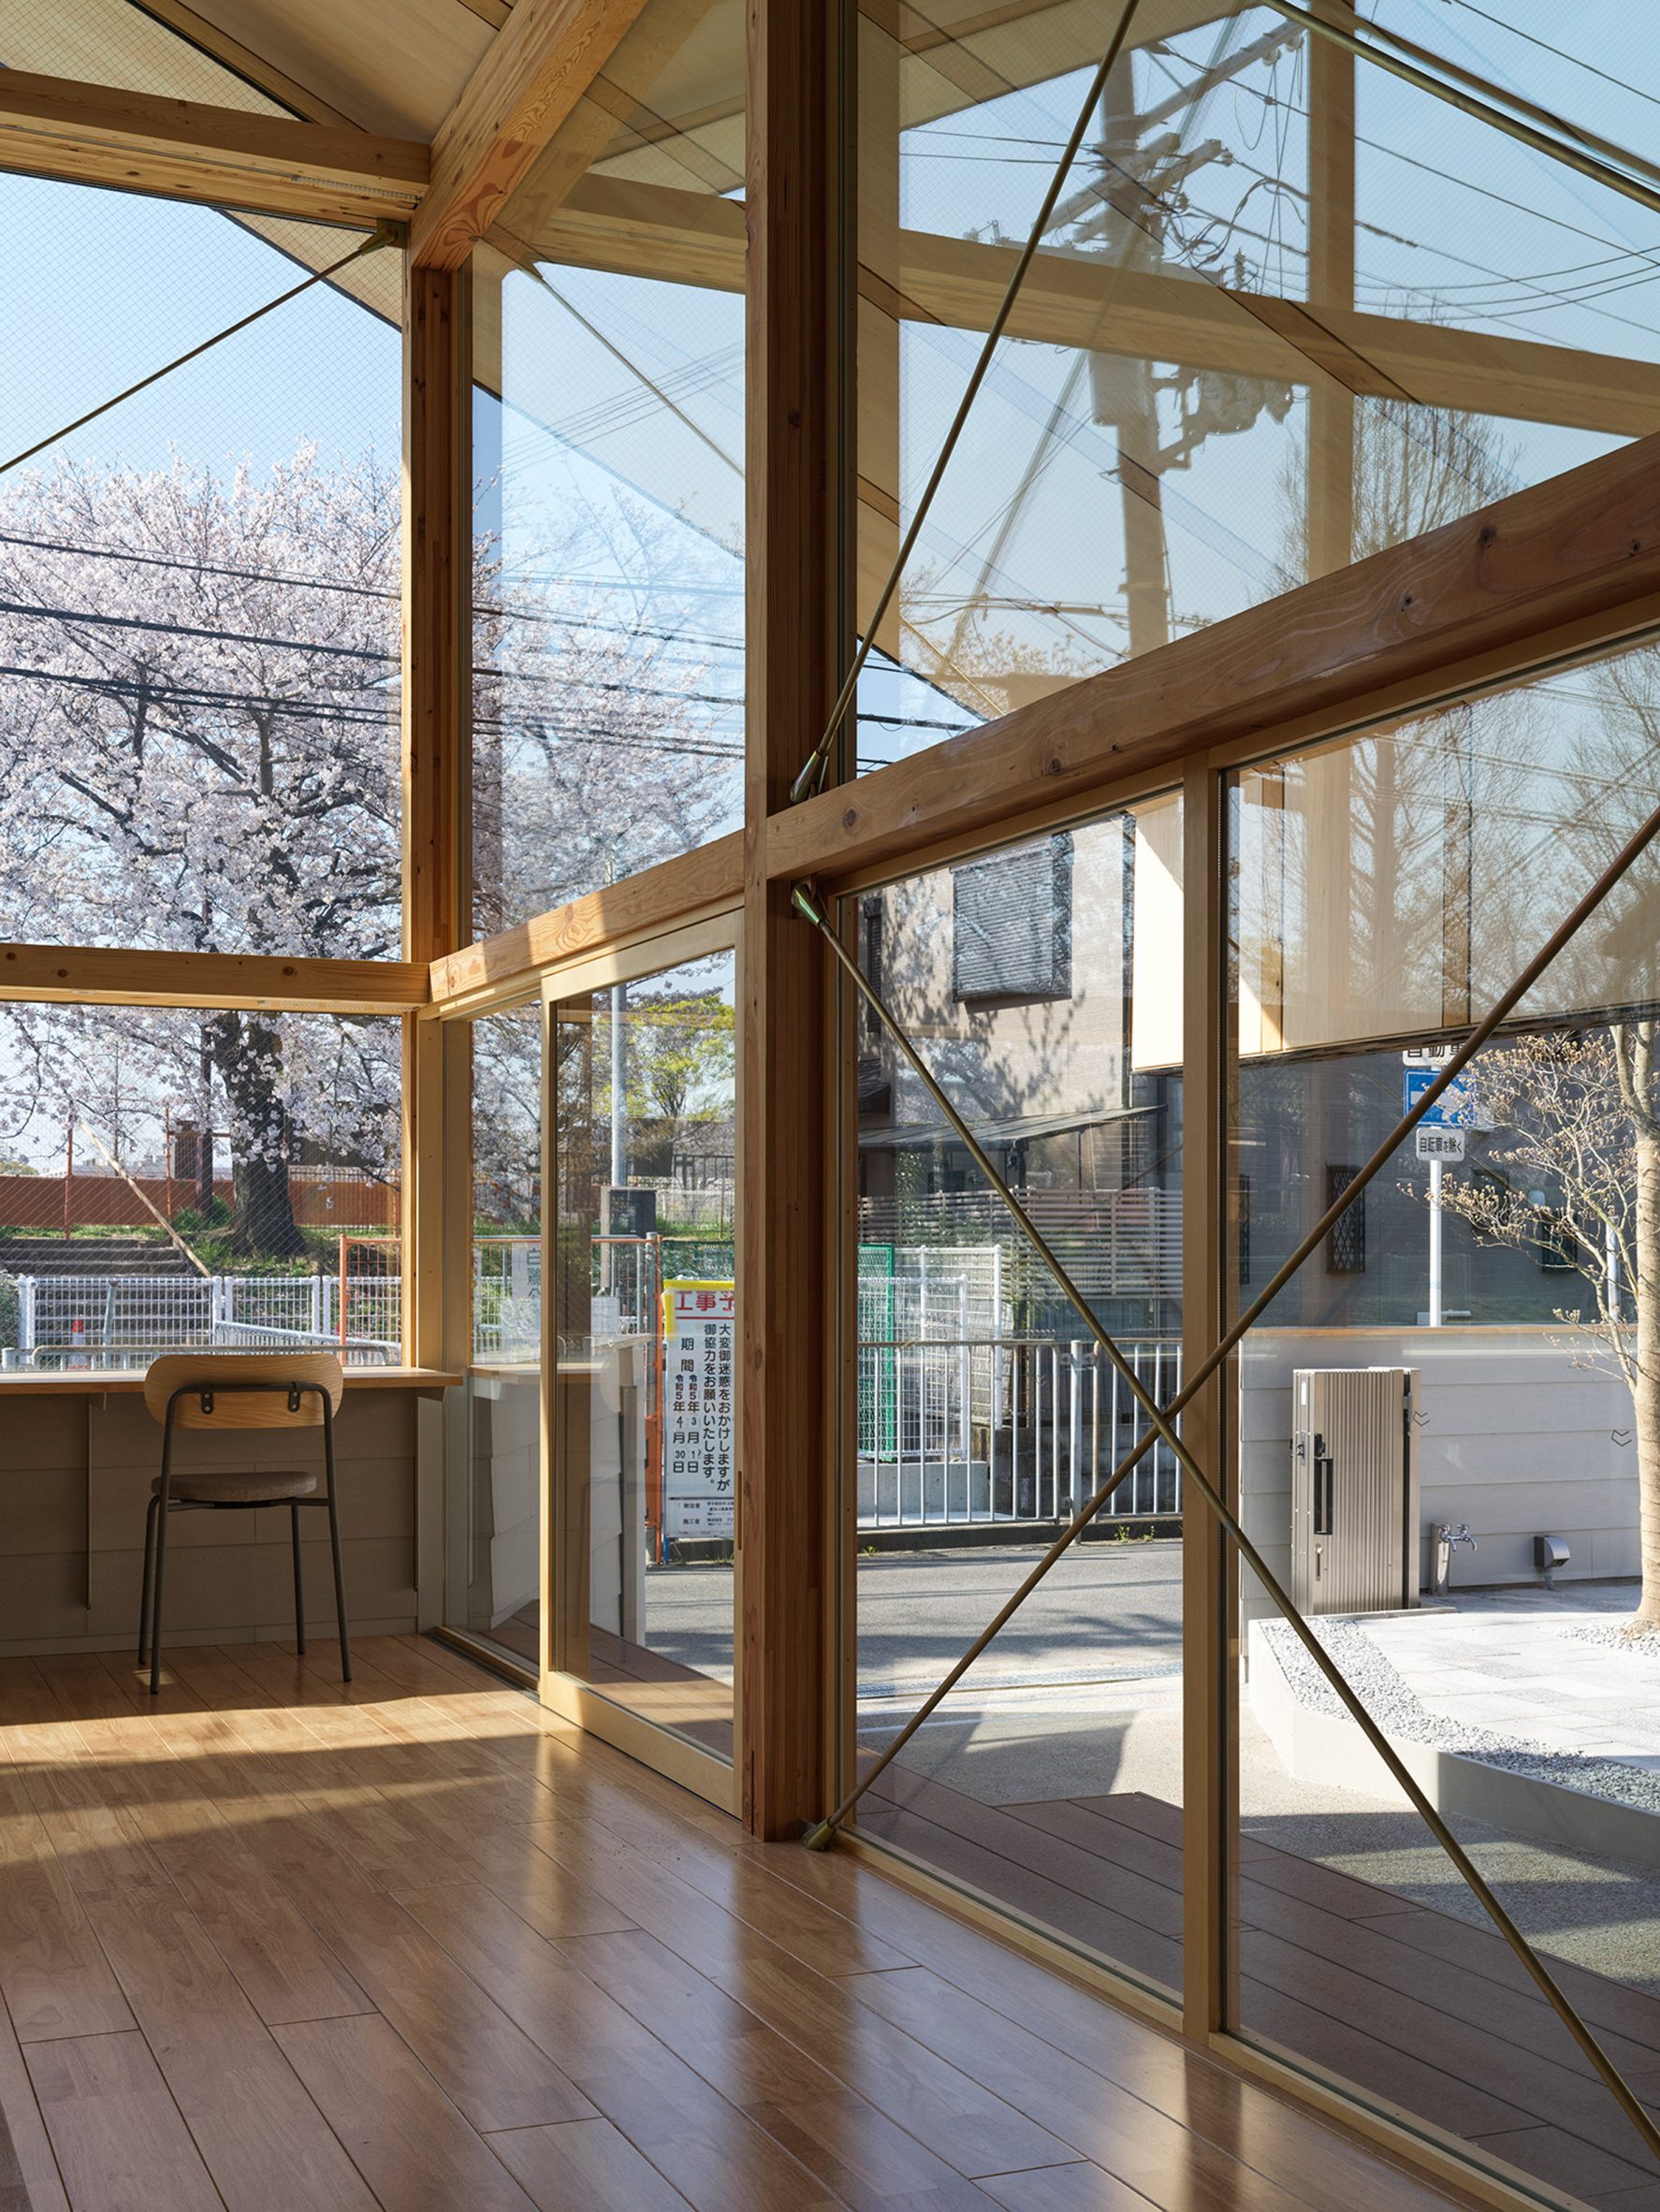 Yukawa Design Lab arranges children's library around giant wooden 